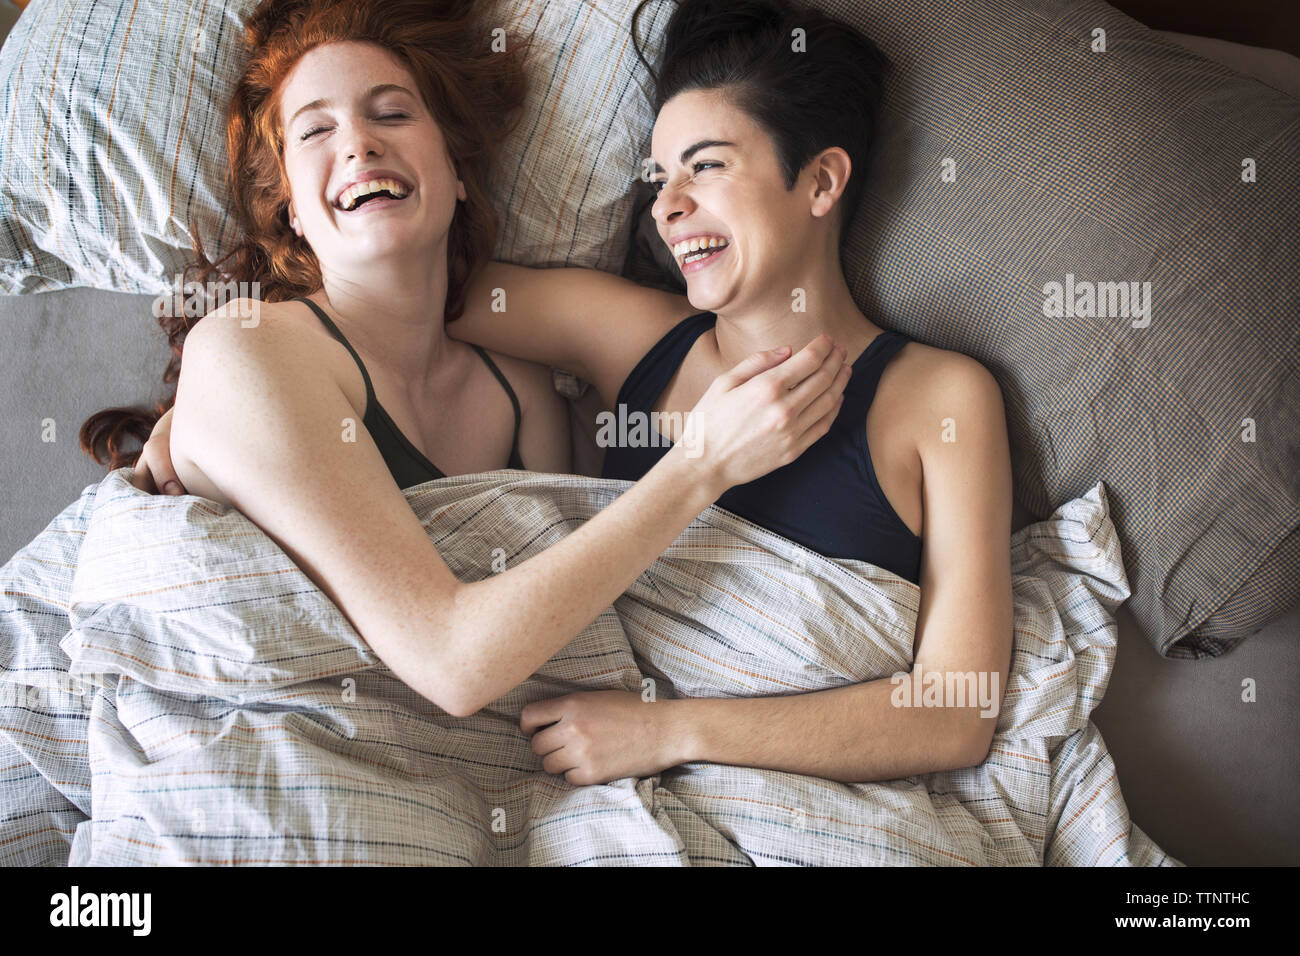 Due lesbiche immagini e fotografie stock ad alta risoluzione - Alamy